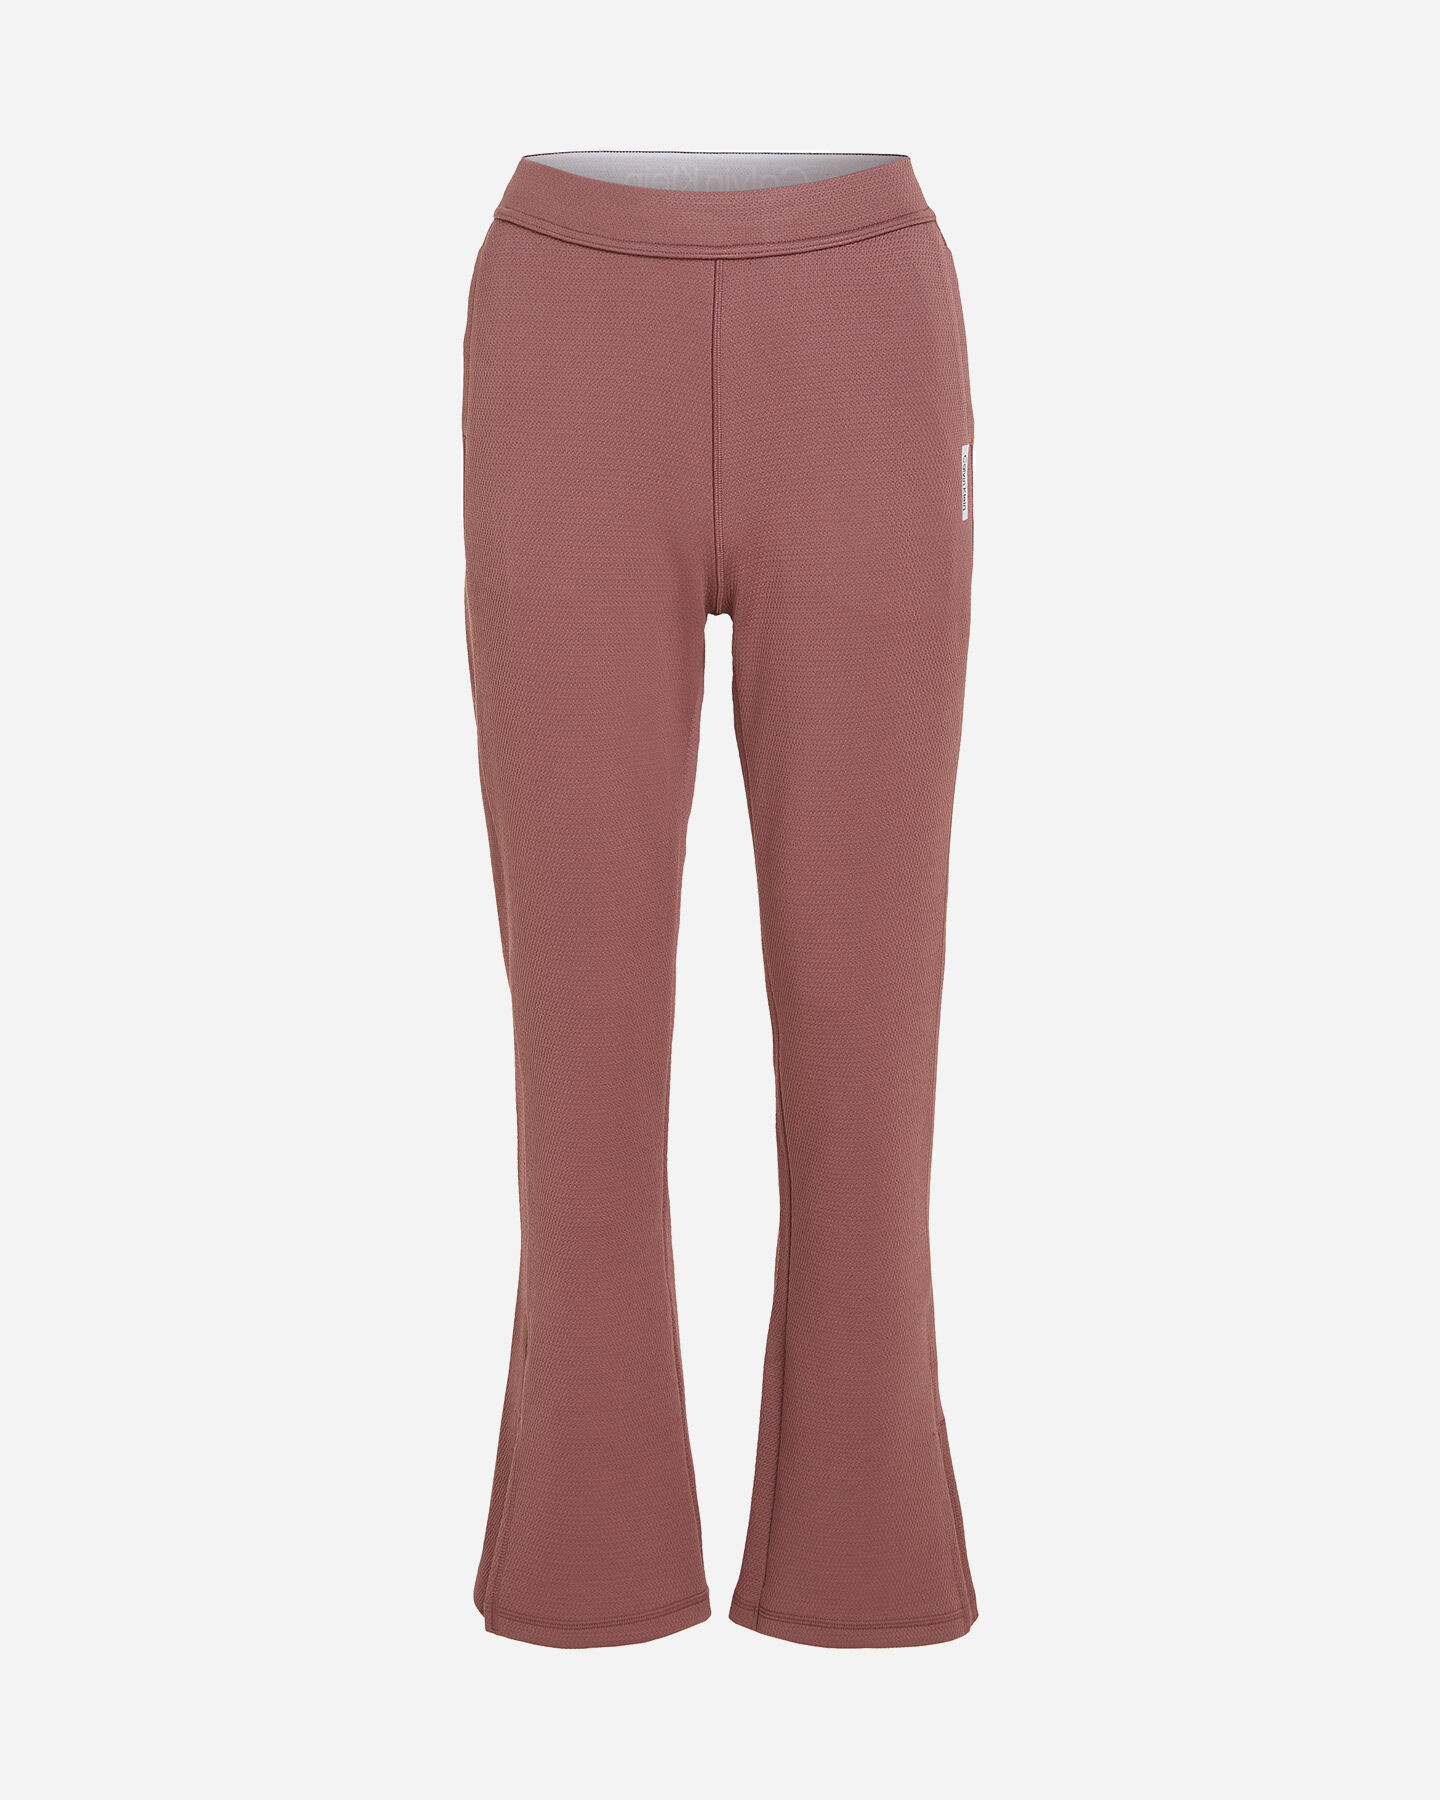  Pantalone CALVIN KLEIN SPORT FLARE W S4129334|LKO|XS scatto 0